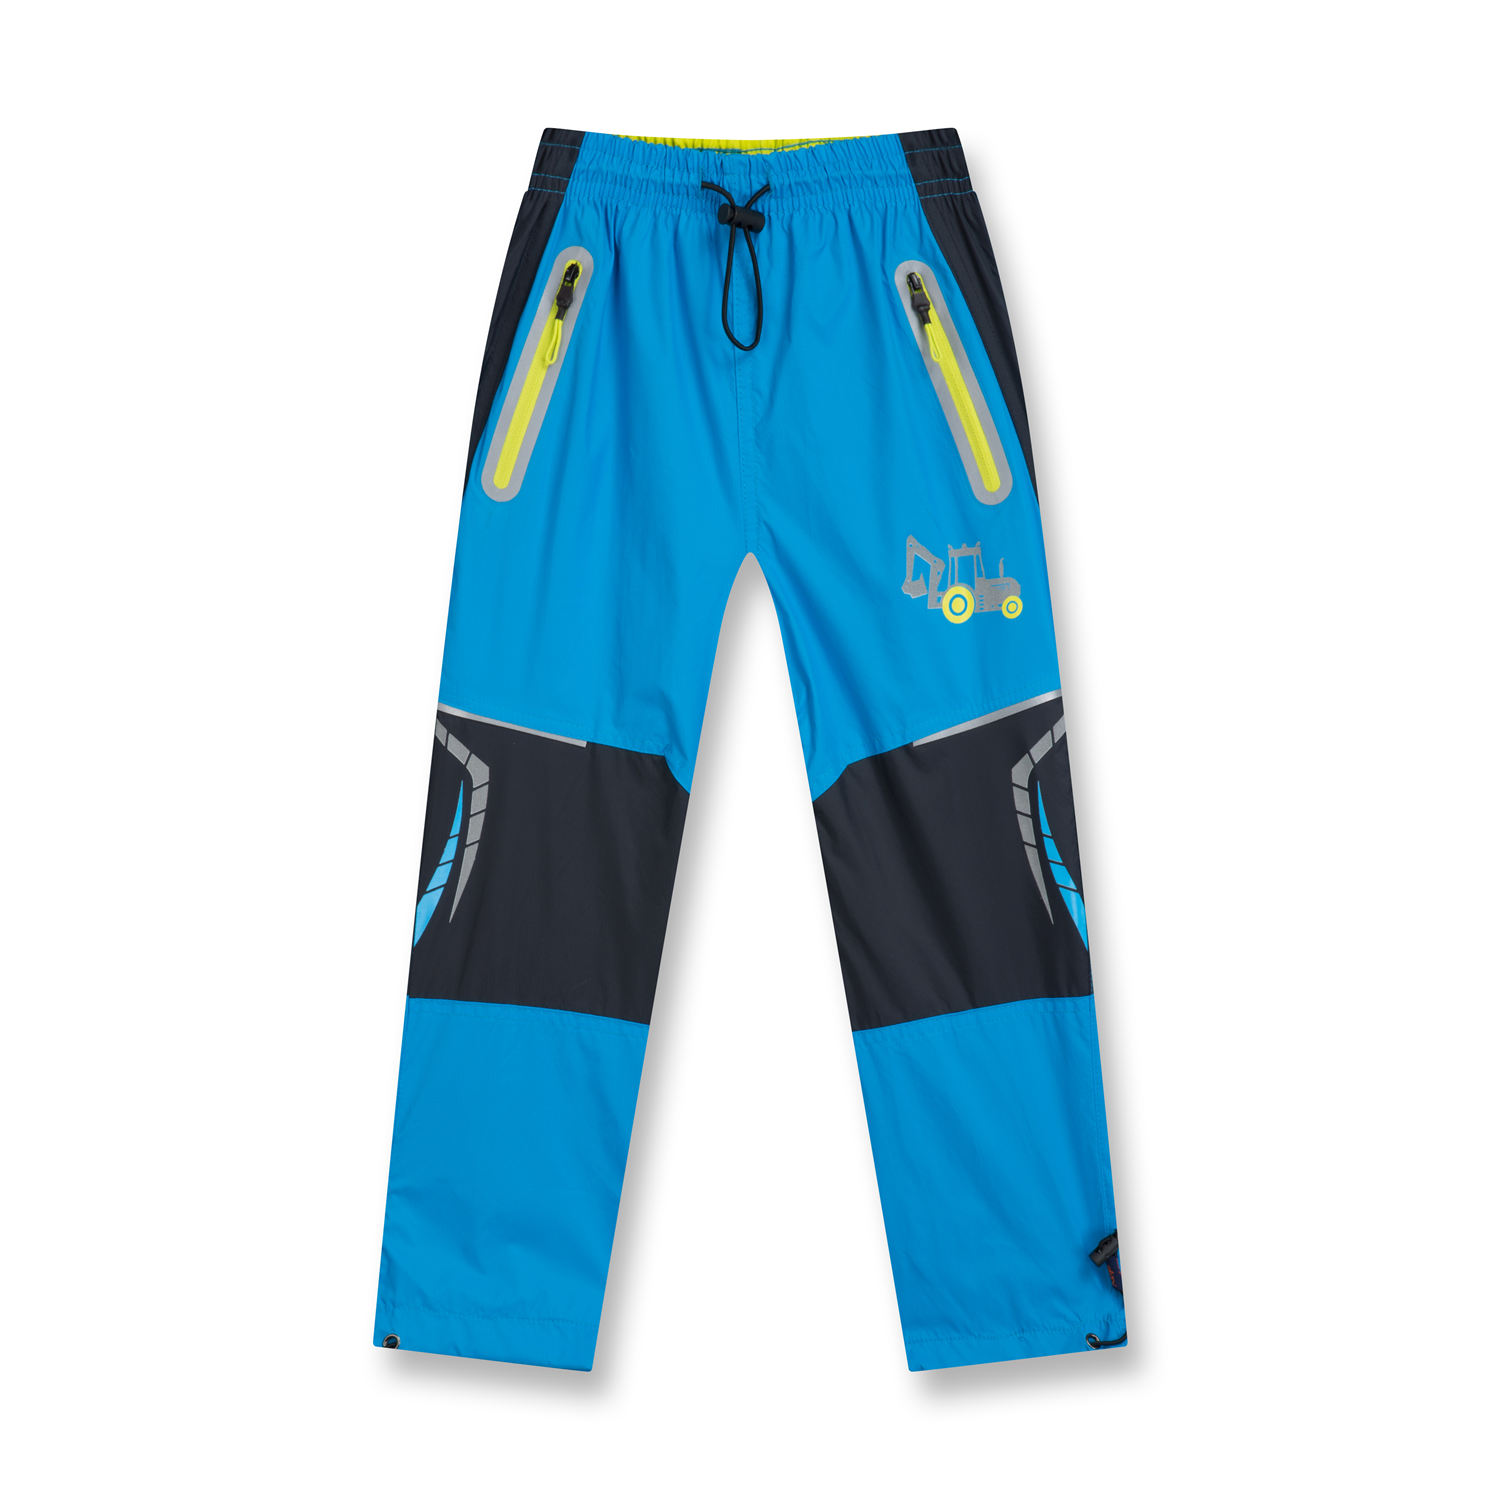 Chlapecké šusťákové kalhoty - KUGO HK9002, tyrkysová Barva: Tyrkysová, Velikost: 98